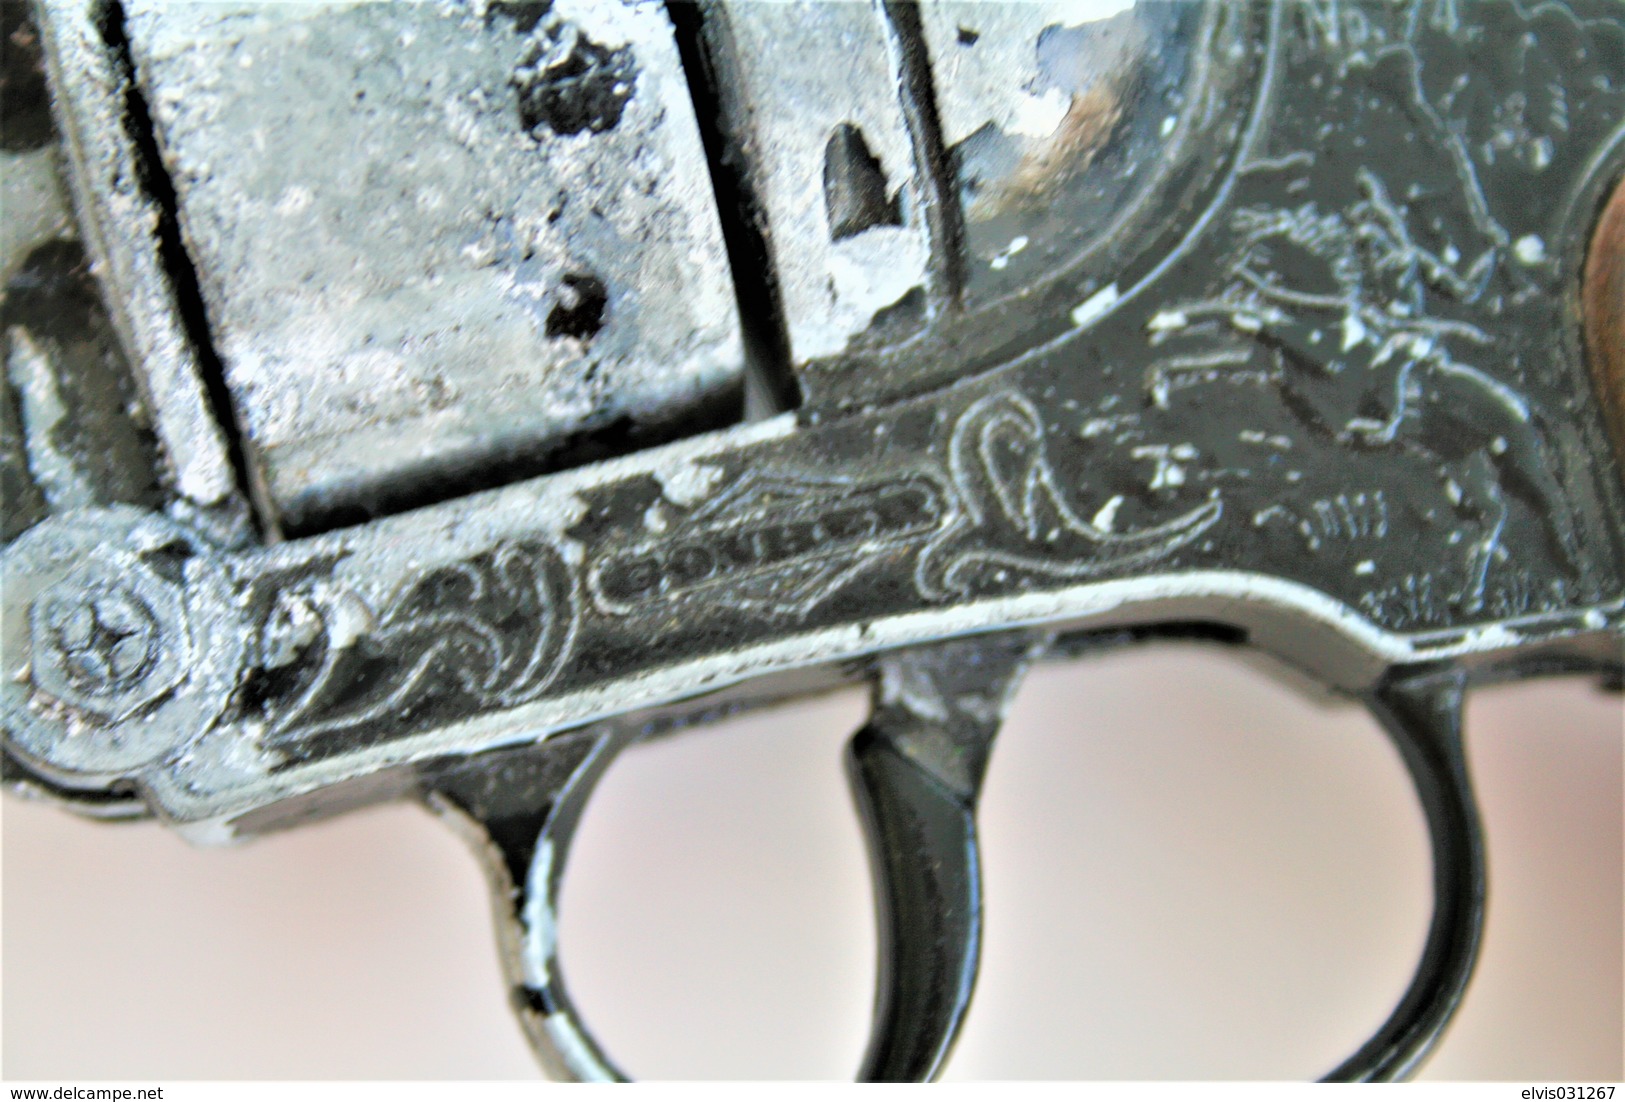 Vintage TOY GUN : GONHER N°74 - L=16cm - 19??s - Made In Spain - Keywords : Cap Gun - Cork - Rifle - Revolver - Pistol - Sammlerwaffen